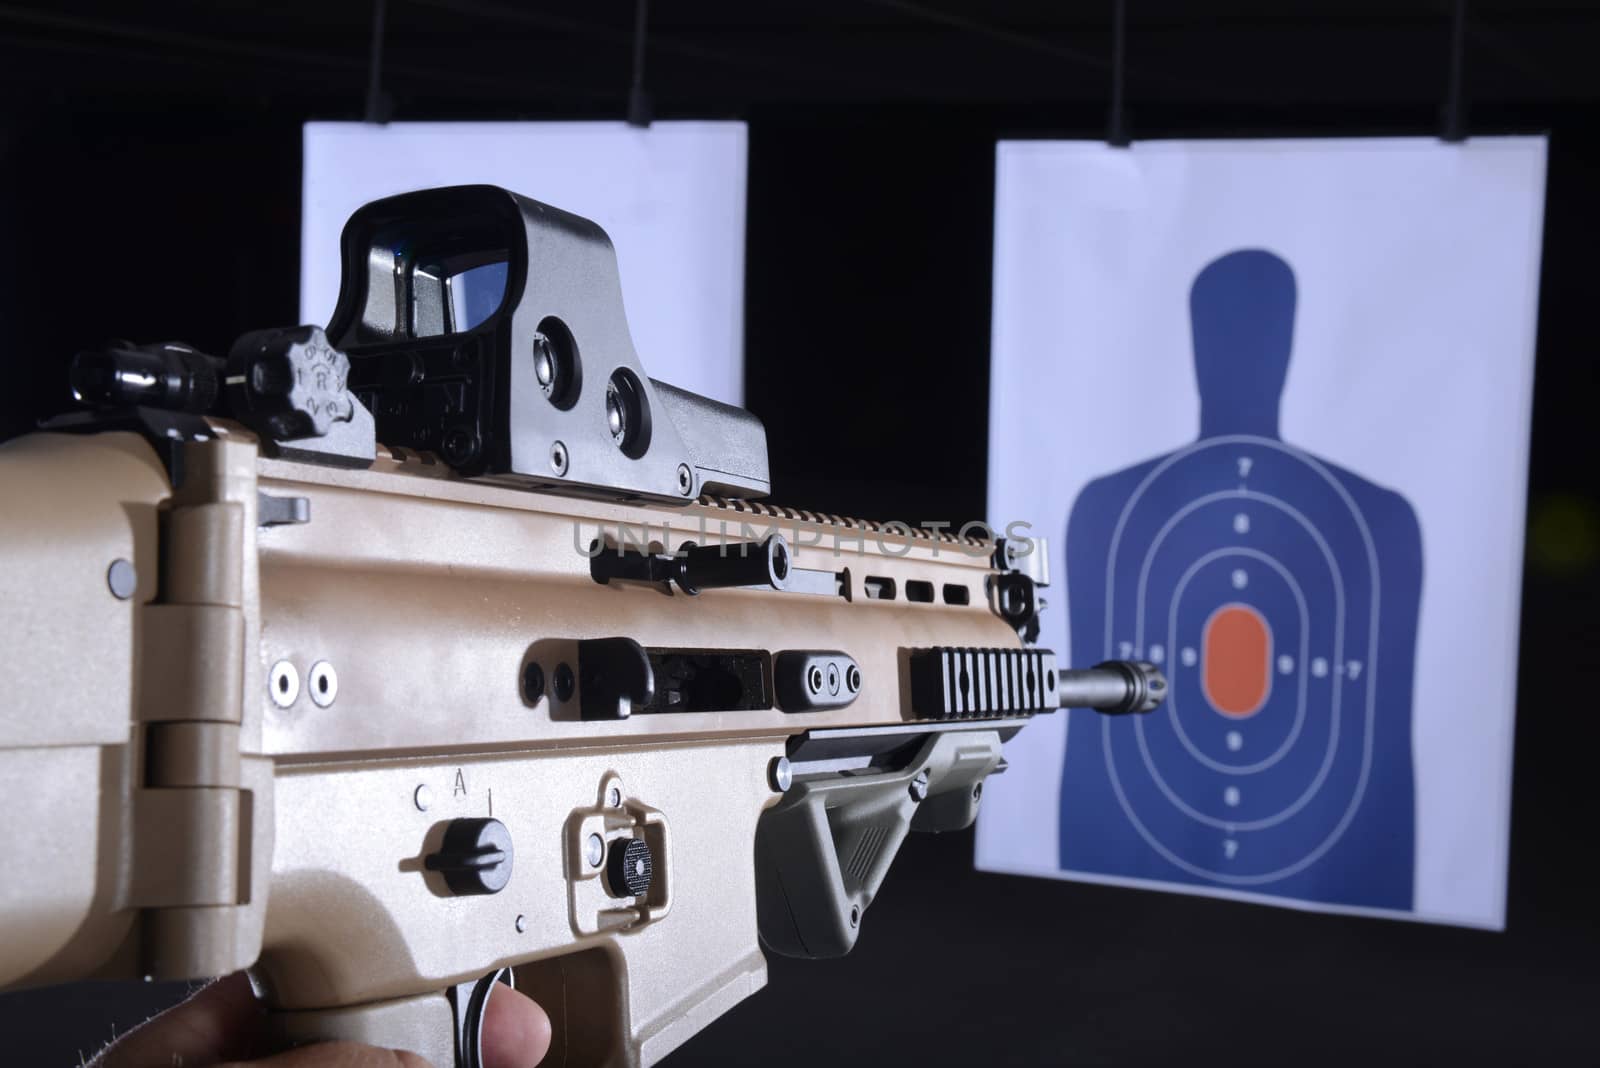 machine gun pointed at bullseye target on gun range by ftlaudgirl